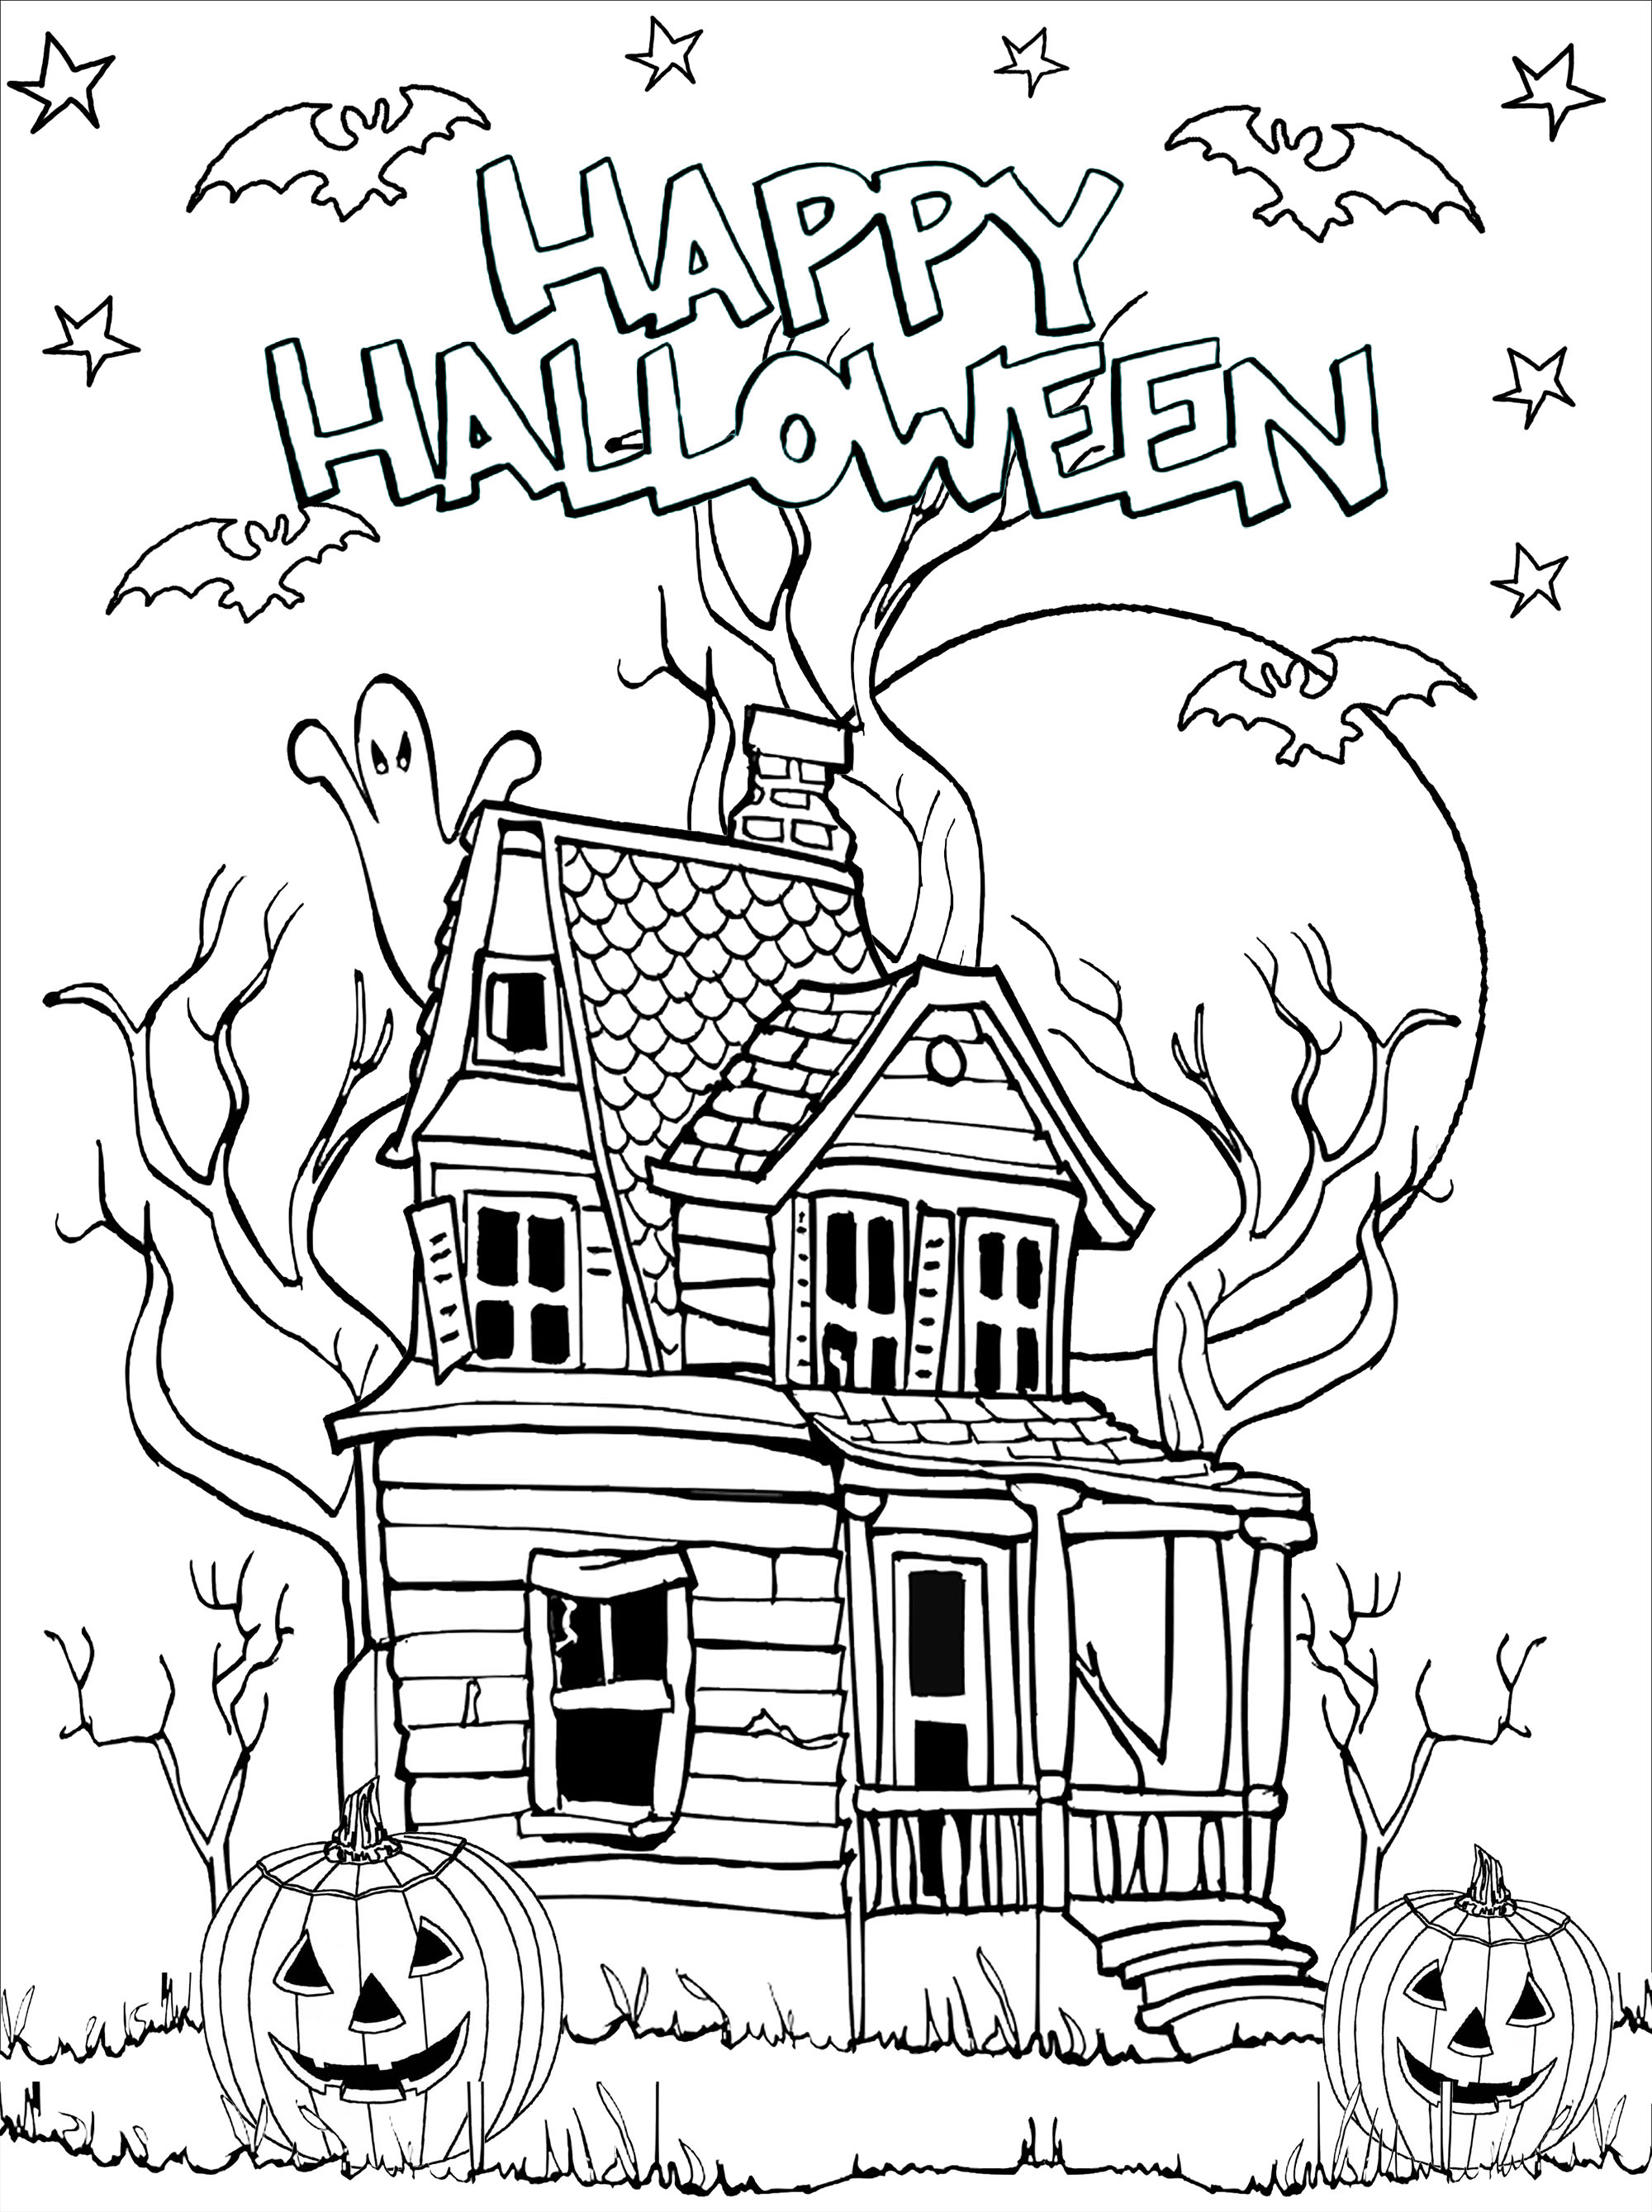 Disegni da colorare sulla casa stregata con zucche (Jack-o'-lantern), pipistrelli, luna e stelle. I dettagli spettrali rendono questa casa infestata molto realistica.
